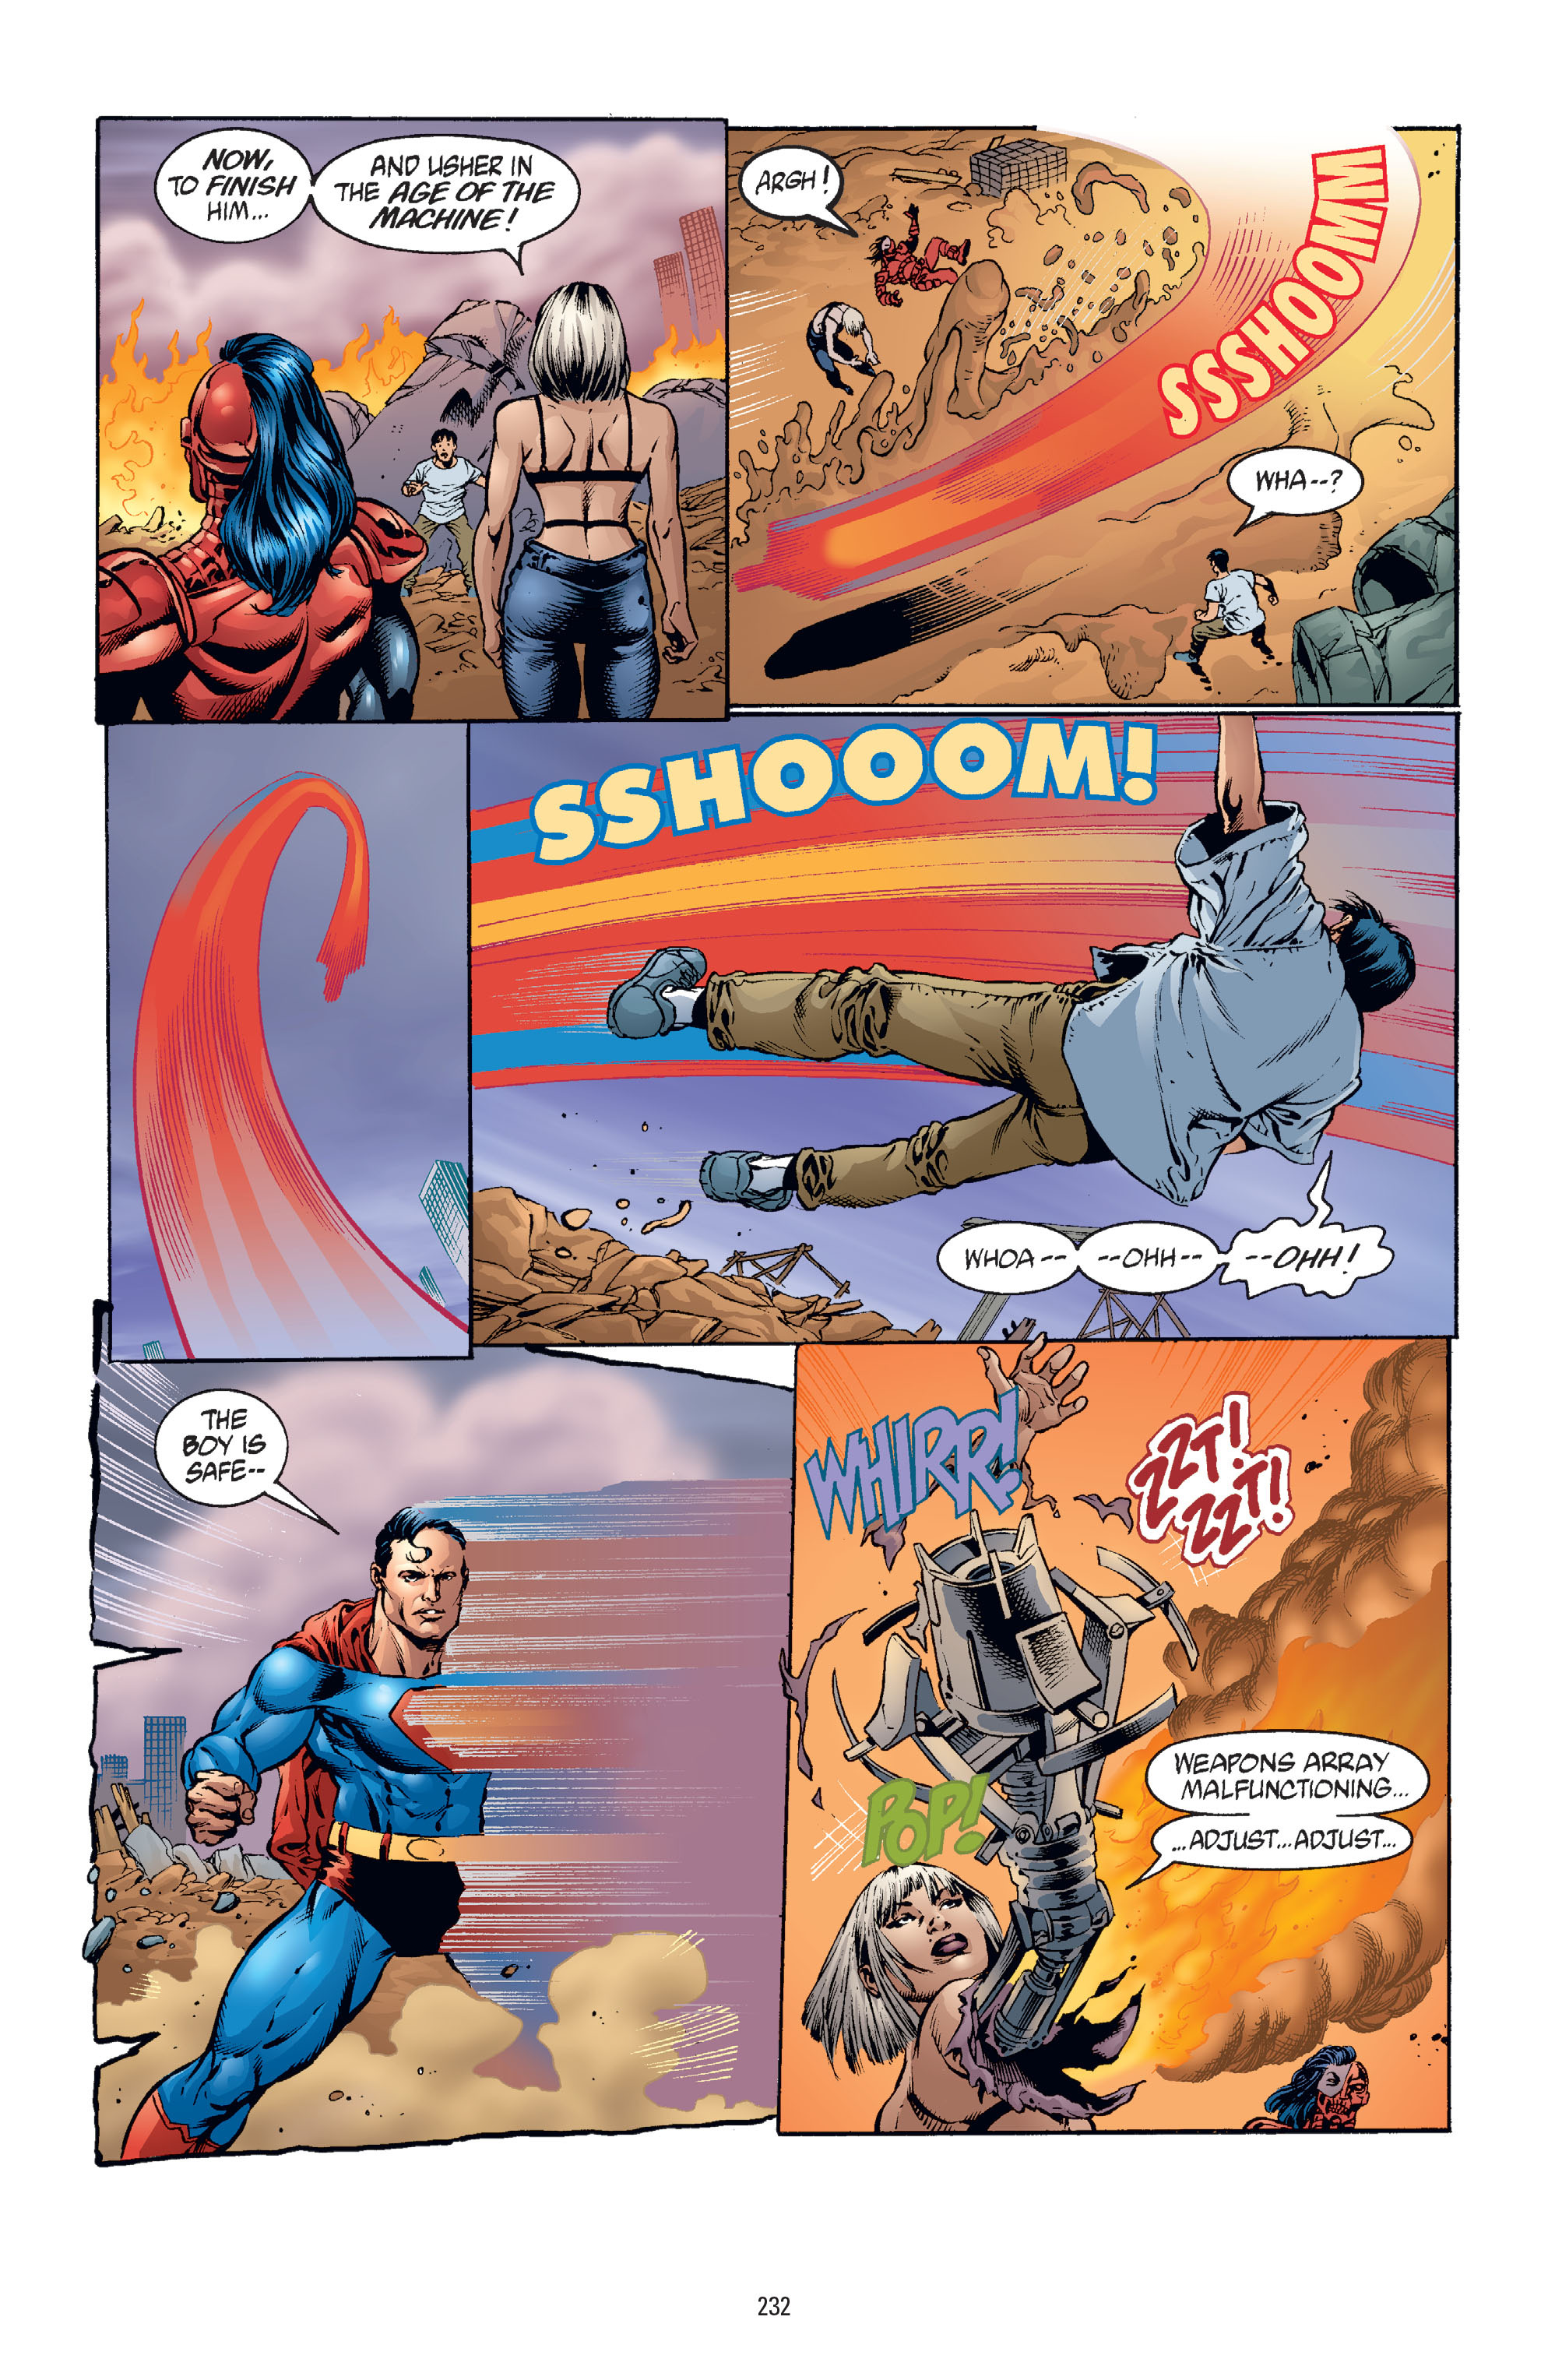 DC Comics/Dark Horse Comics: Justice League Full #1 - English 224